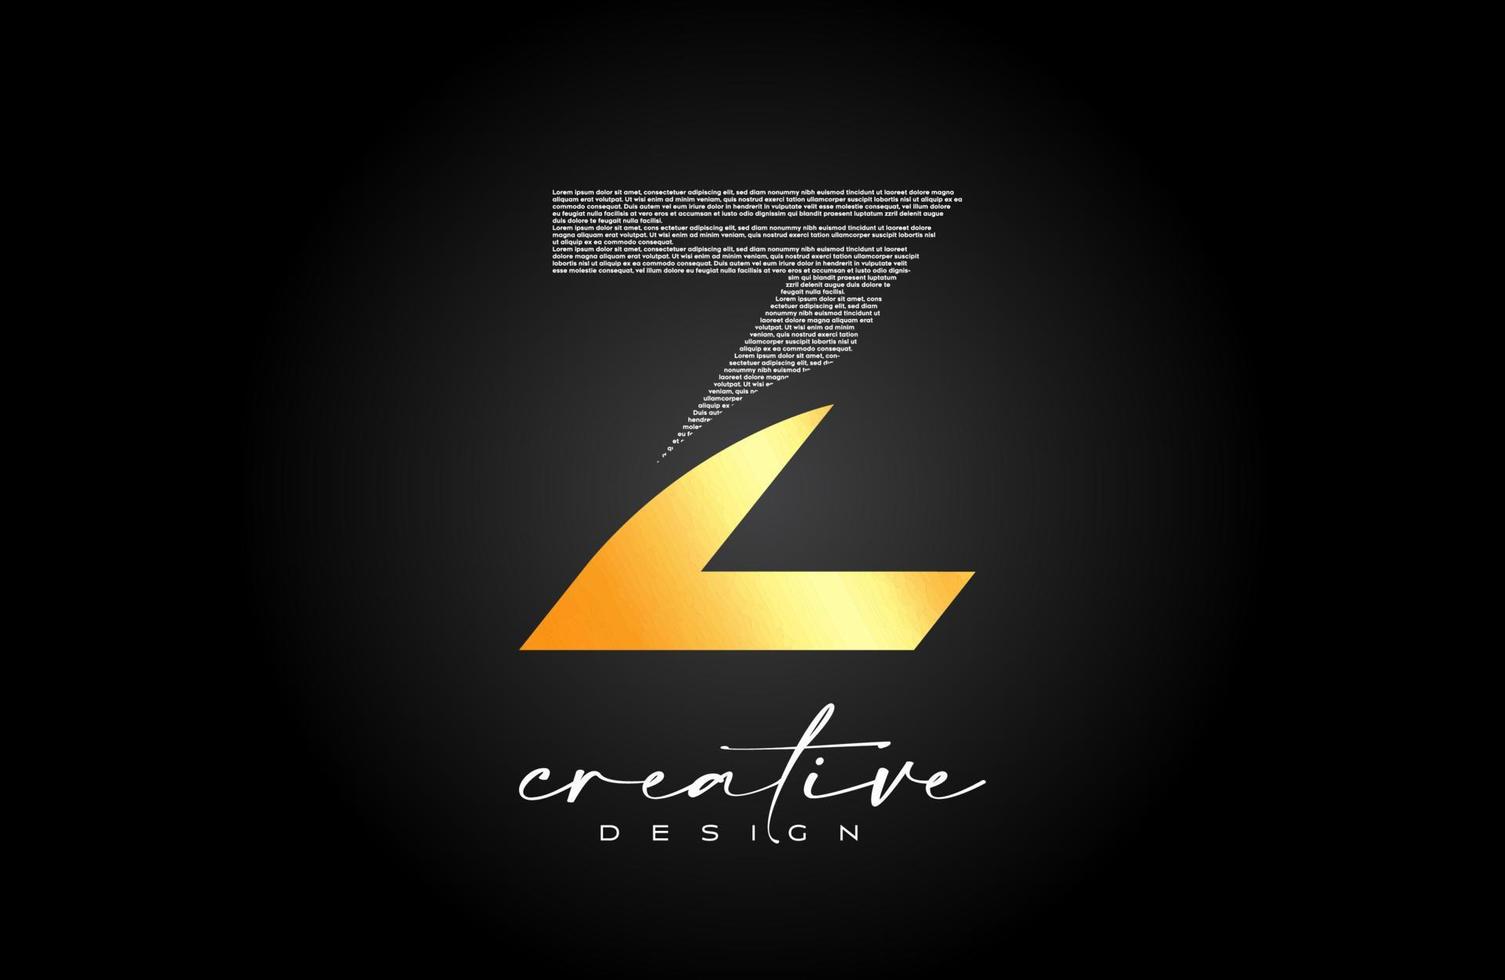 création de logo de lettre z doré avec lettre créative z faite de vecteur de texture de police de texte noir